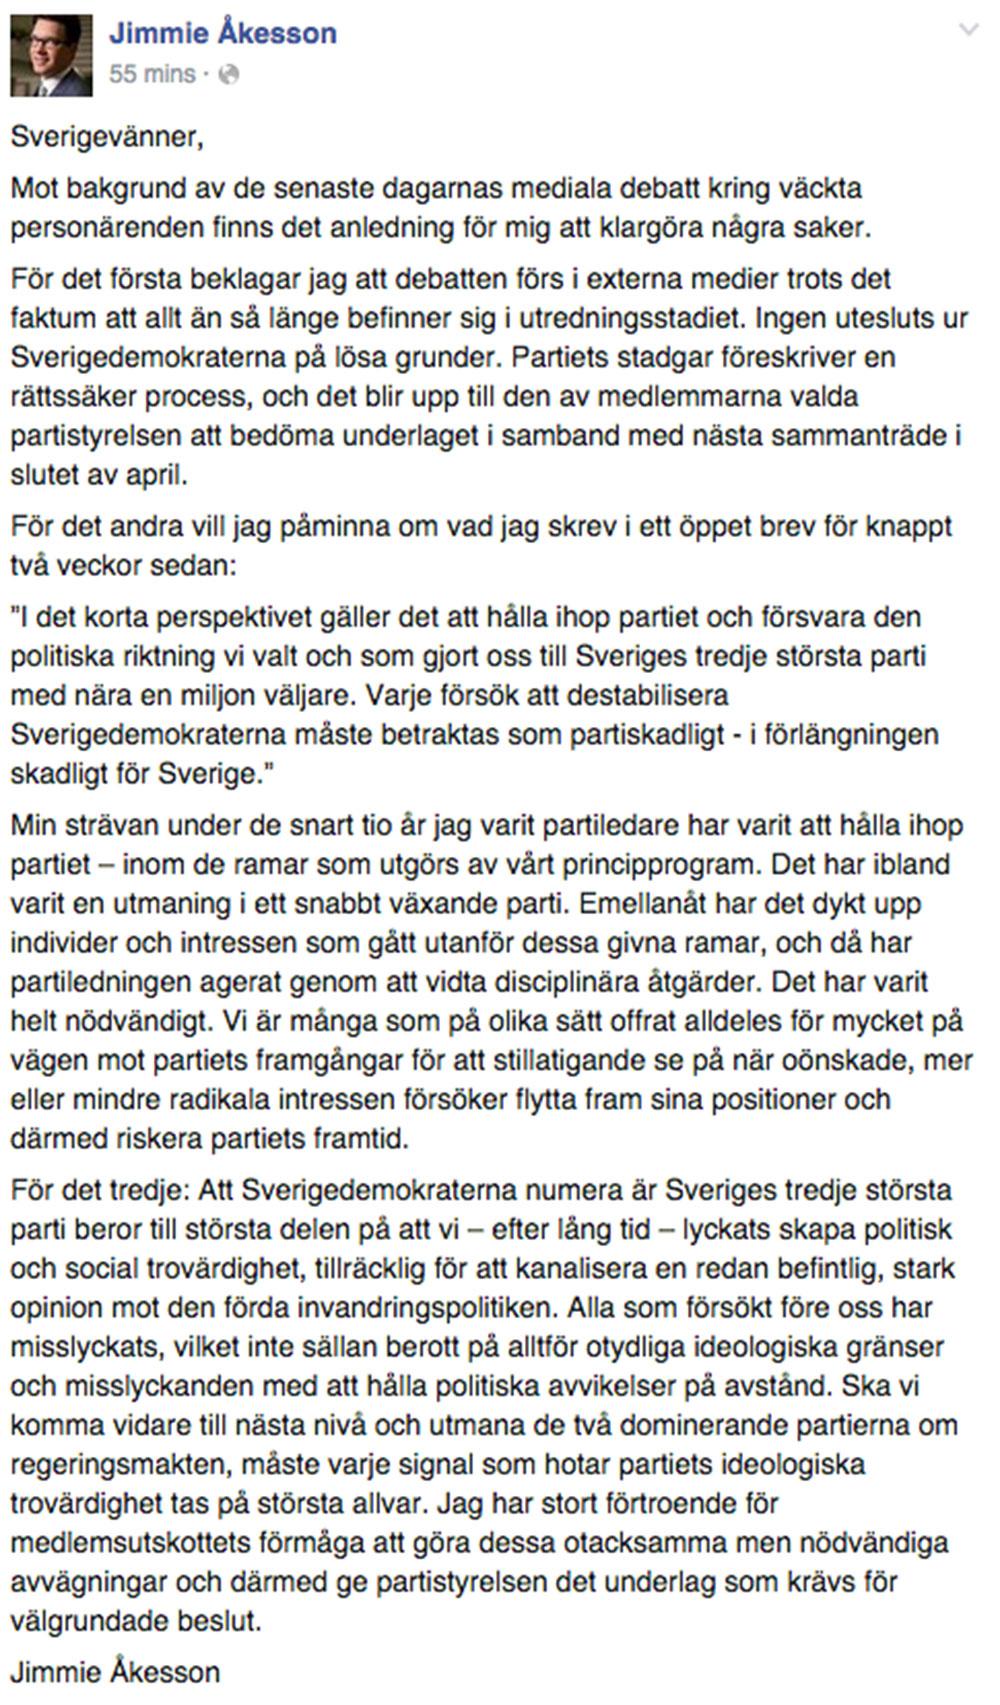 Faksimil från Åkessons Facebook.